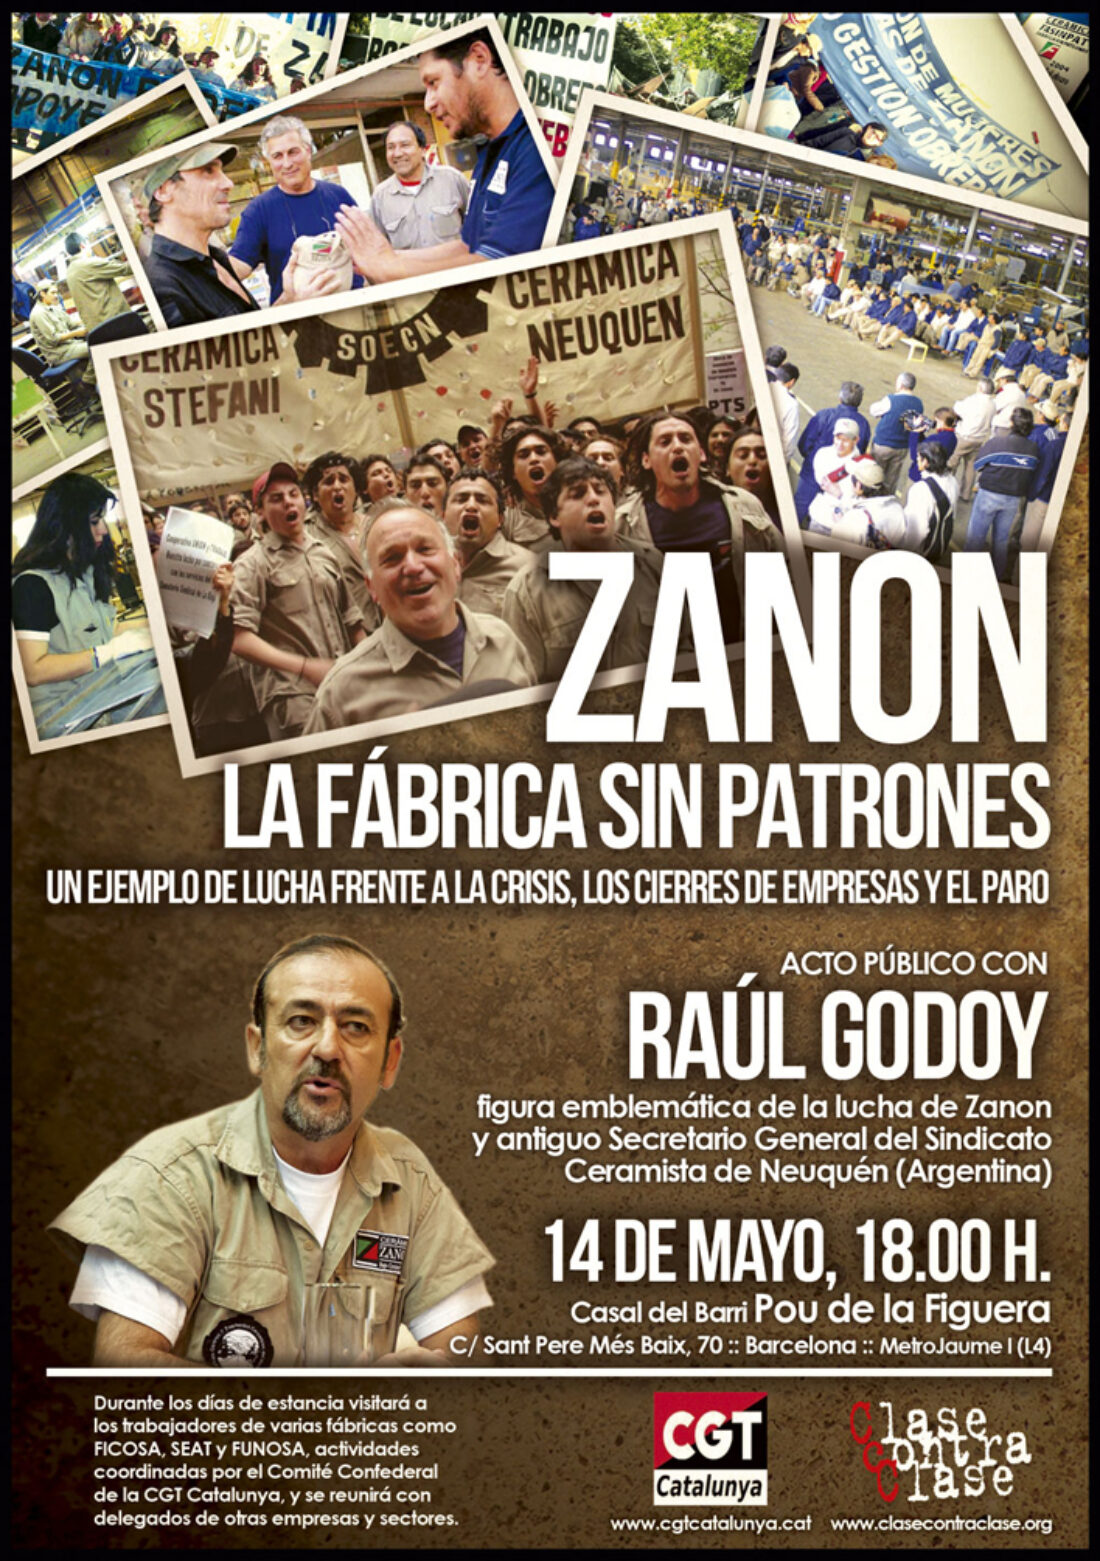 Raúl Godoy, referente histórico de los obreros de Zanon, visita Barcelona